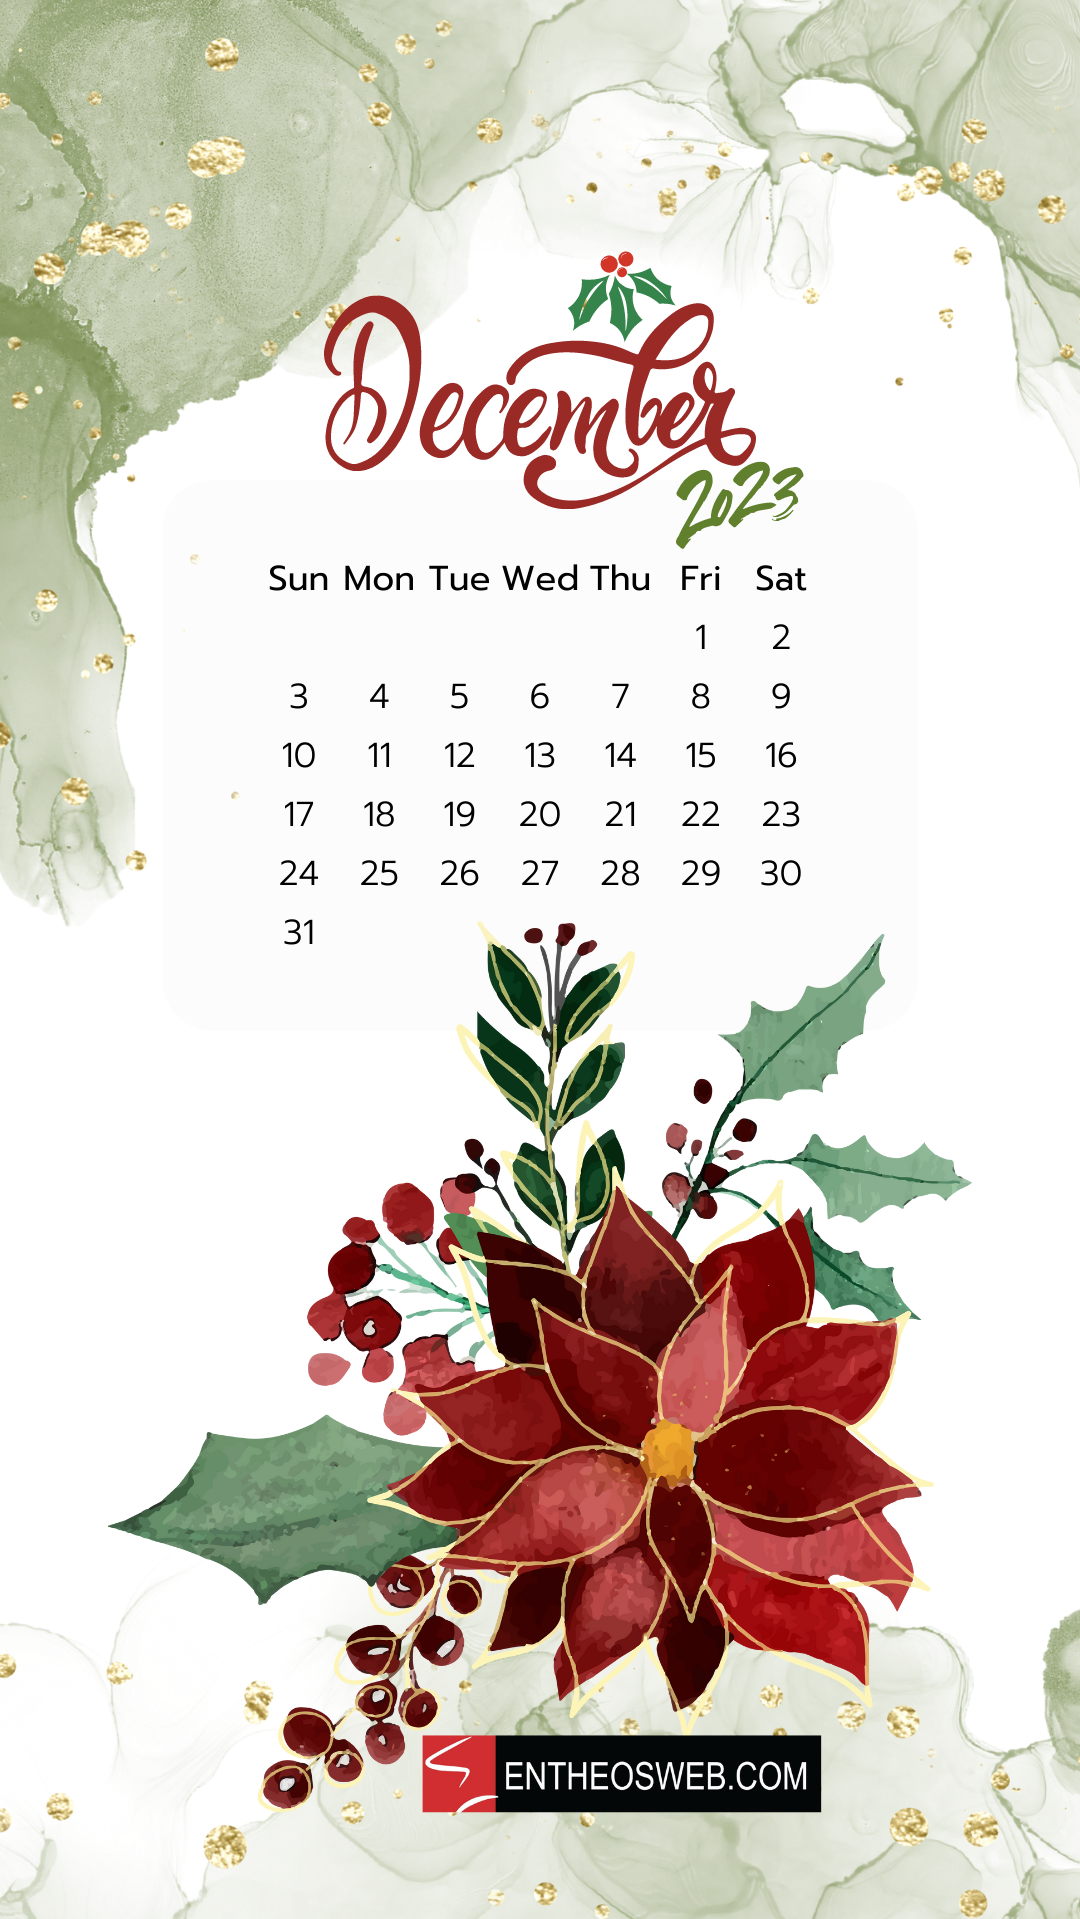 December Calendar Phone Wallpaper Entheosweb